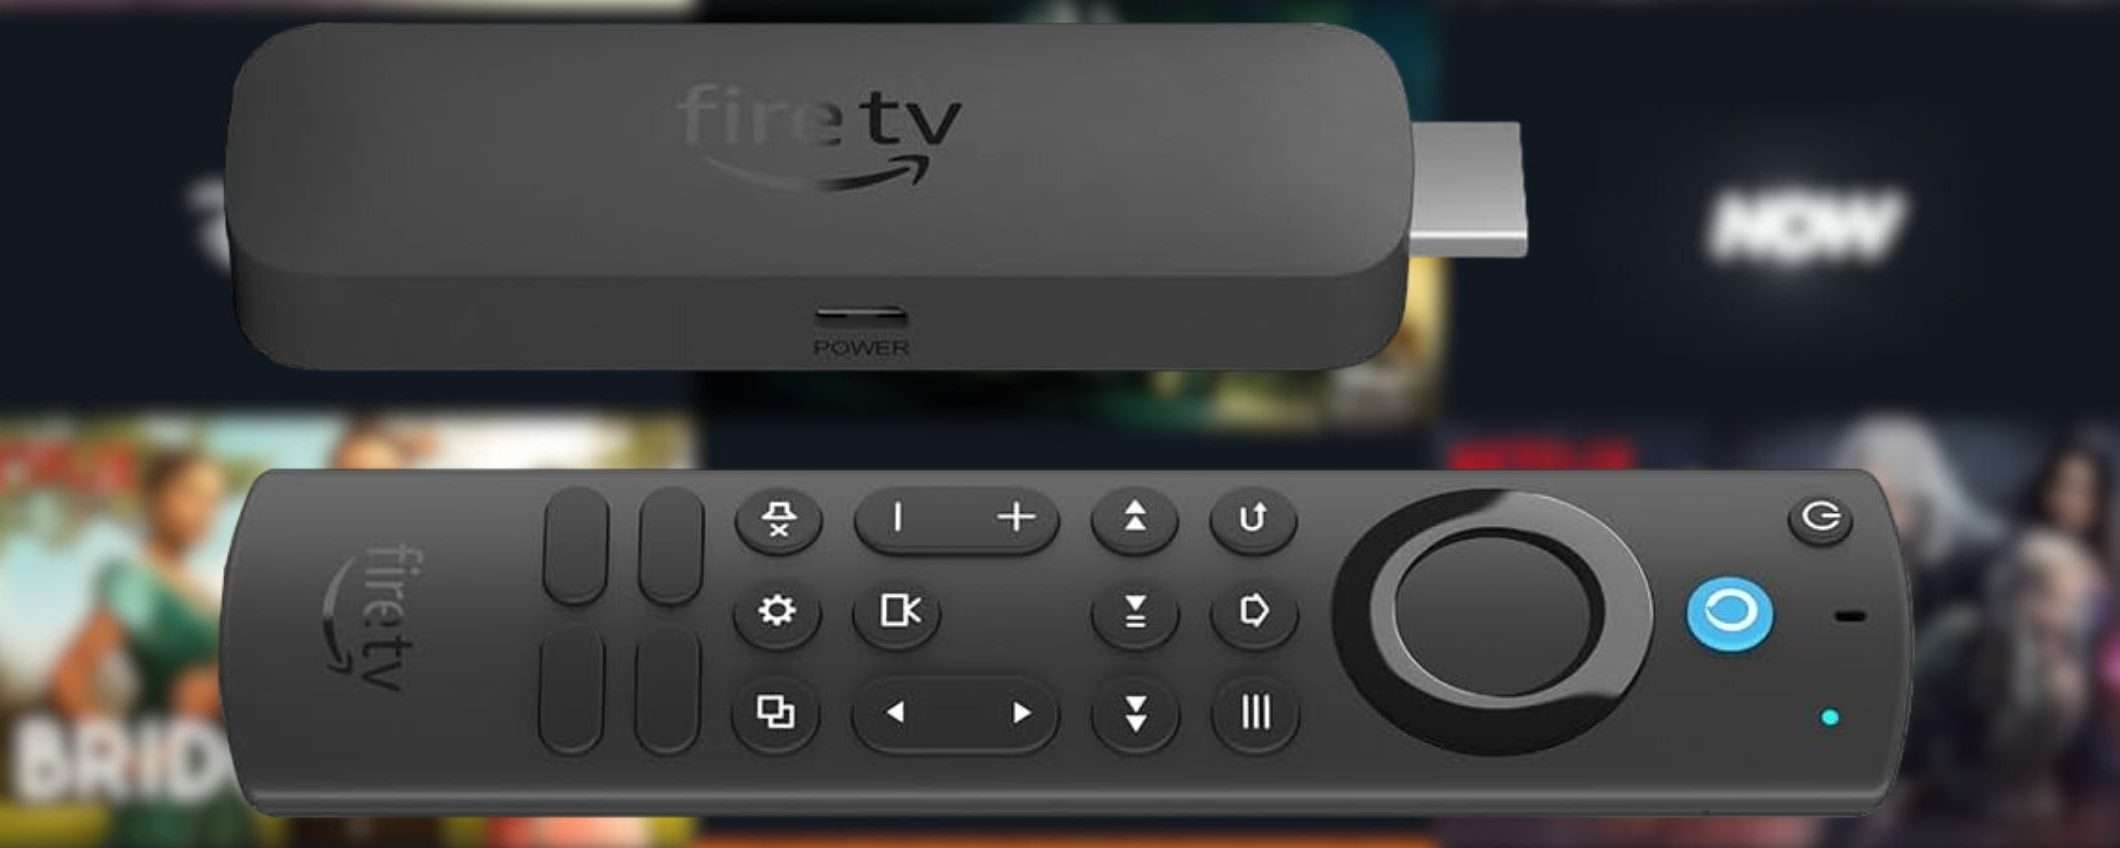 Amazon Fire TV Stick 4K Max in offerta: trasforma la tua VECCHIA TV in un PC